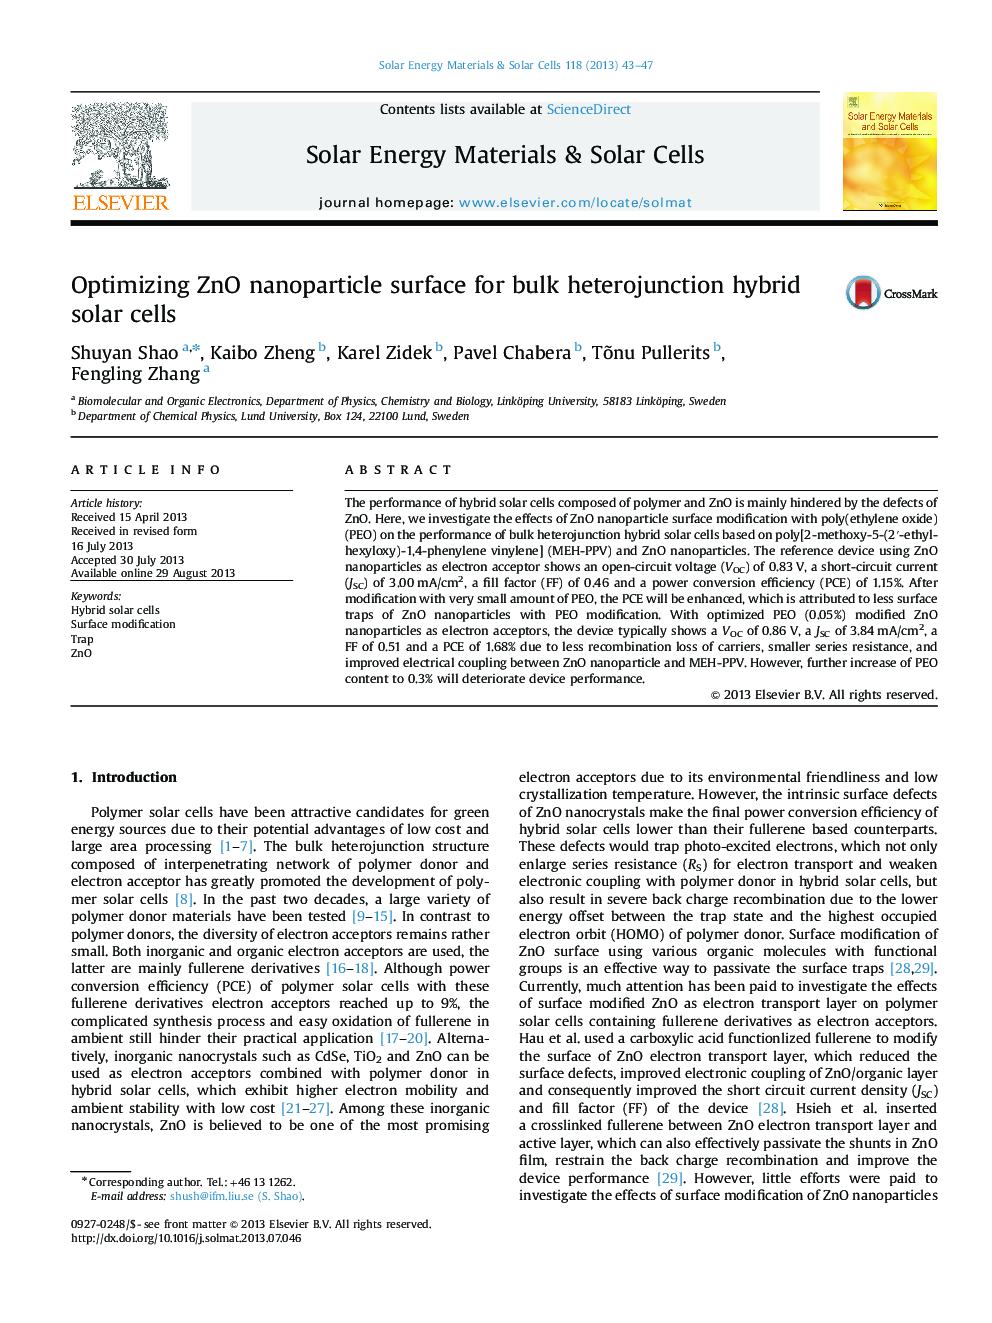 Optimizing ZnO nanoparticle surface for bulk heterojunction hybrid solar cells